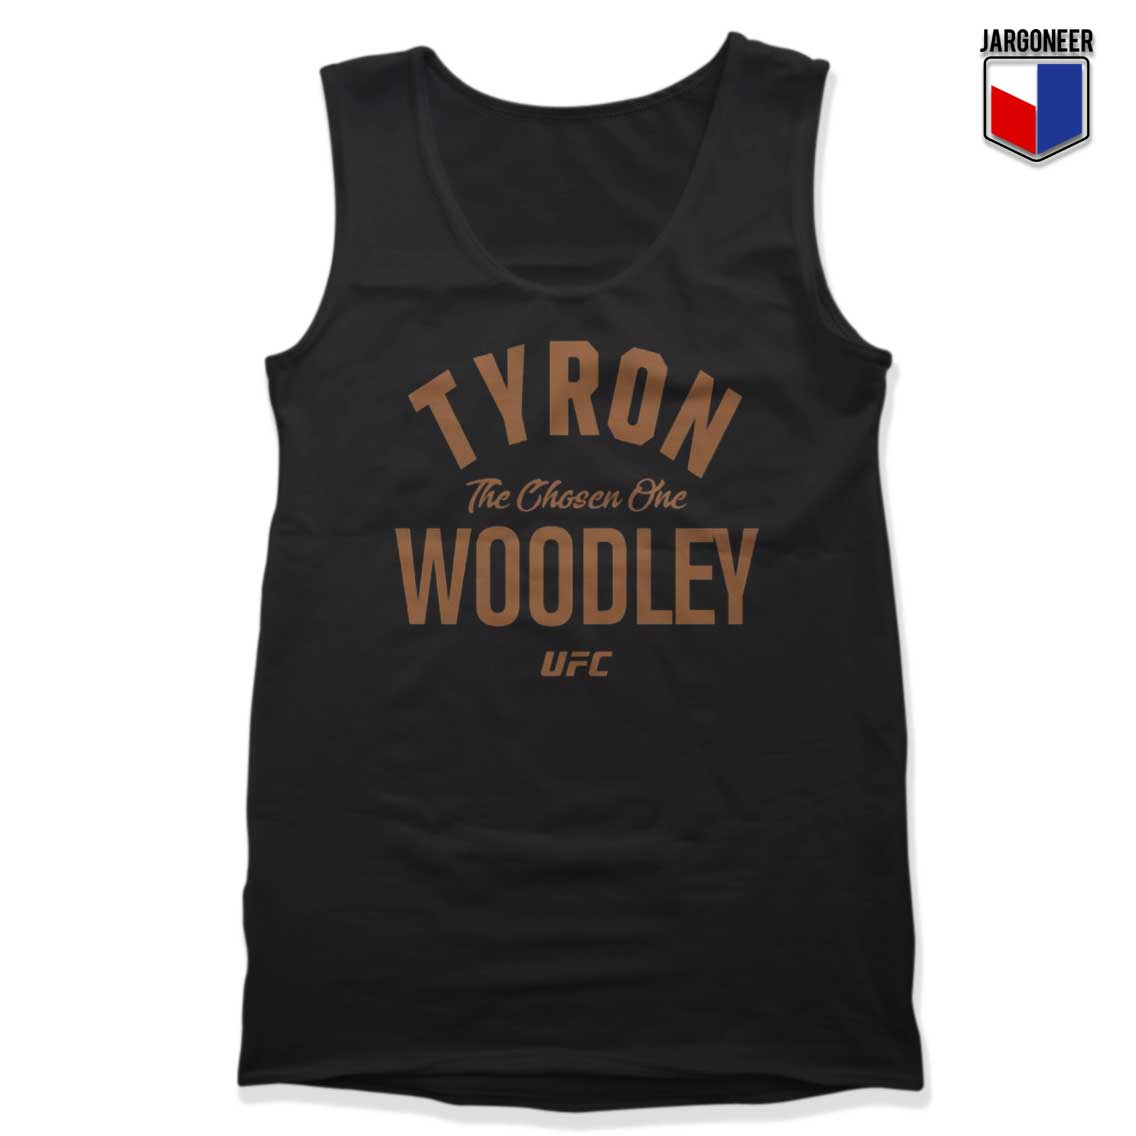 Tyron Woodley UFC Tank Top - Shop Unique Graphic Cool Shirt Designs